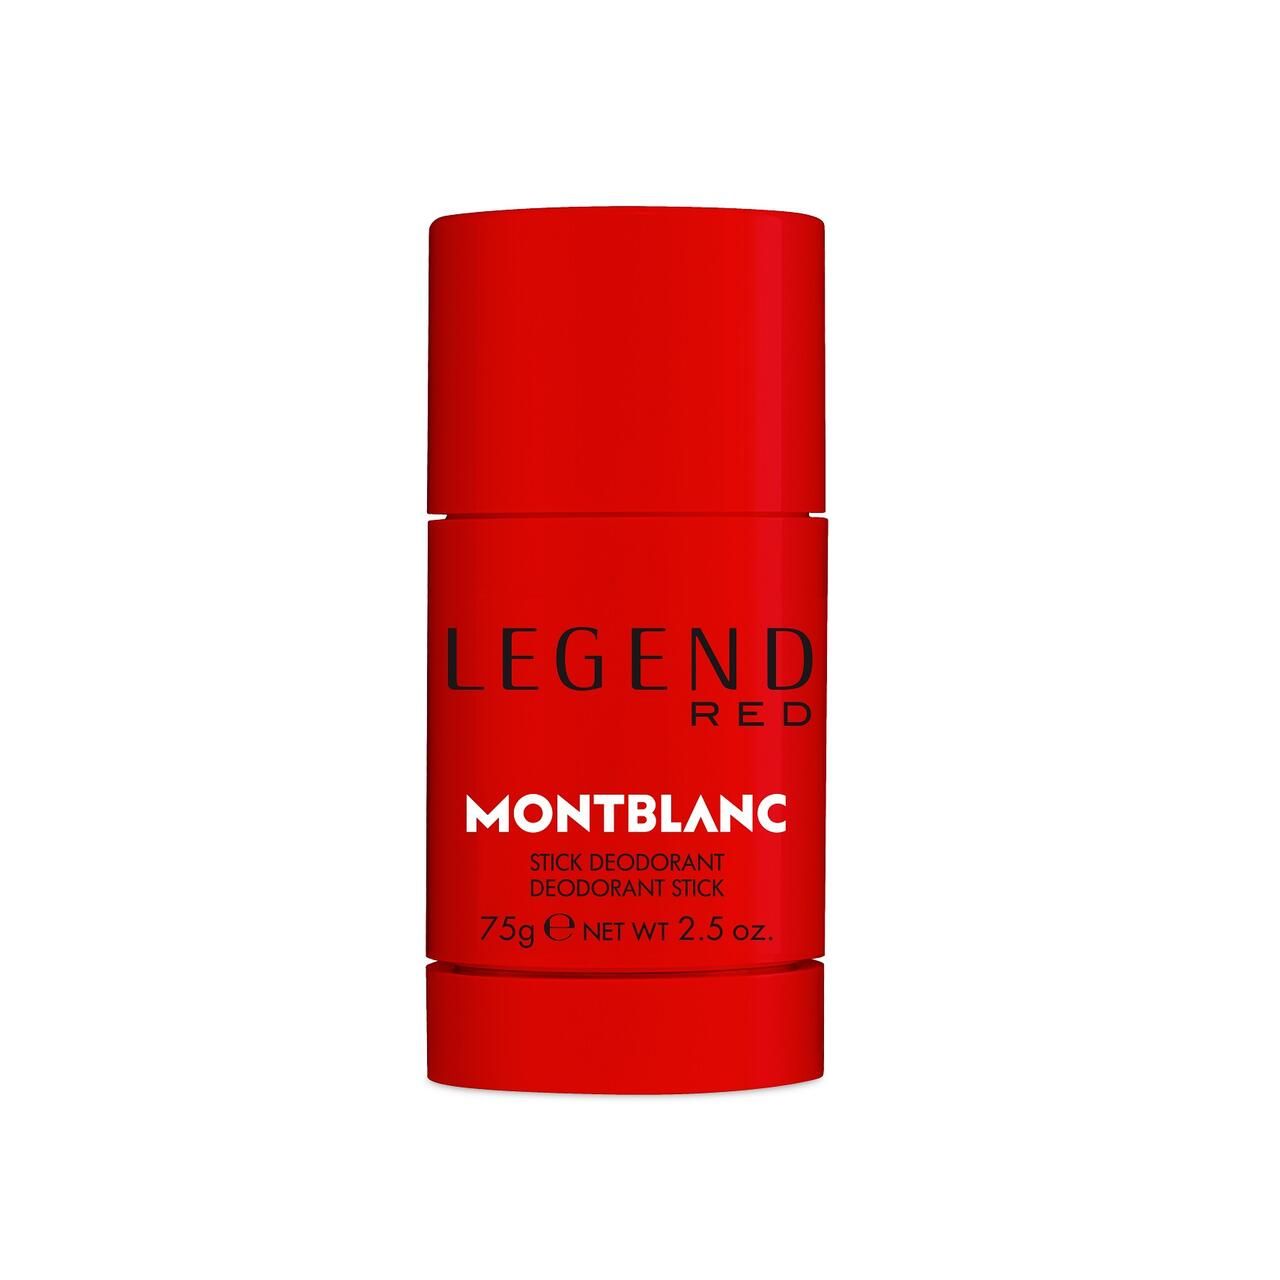 Montblanc, Legend Red Deodorant Stick